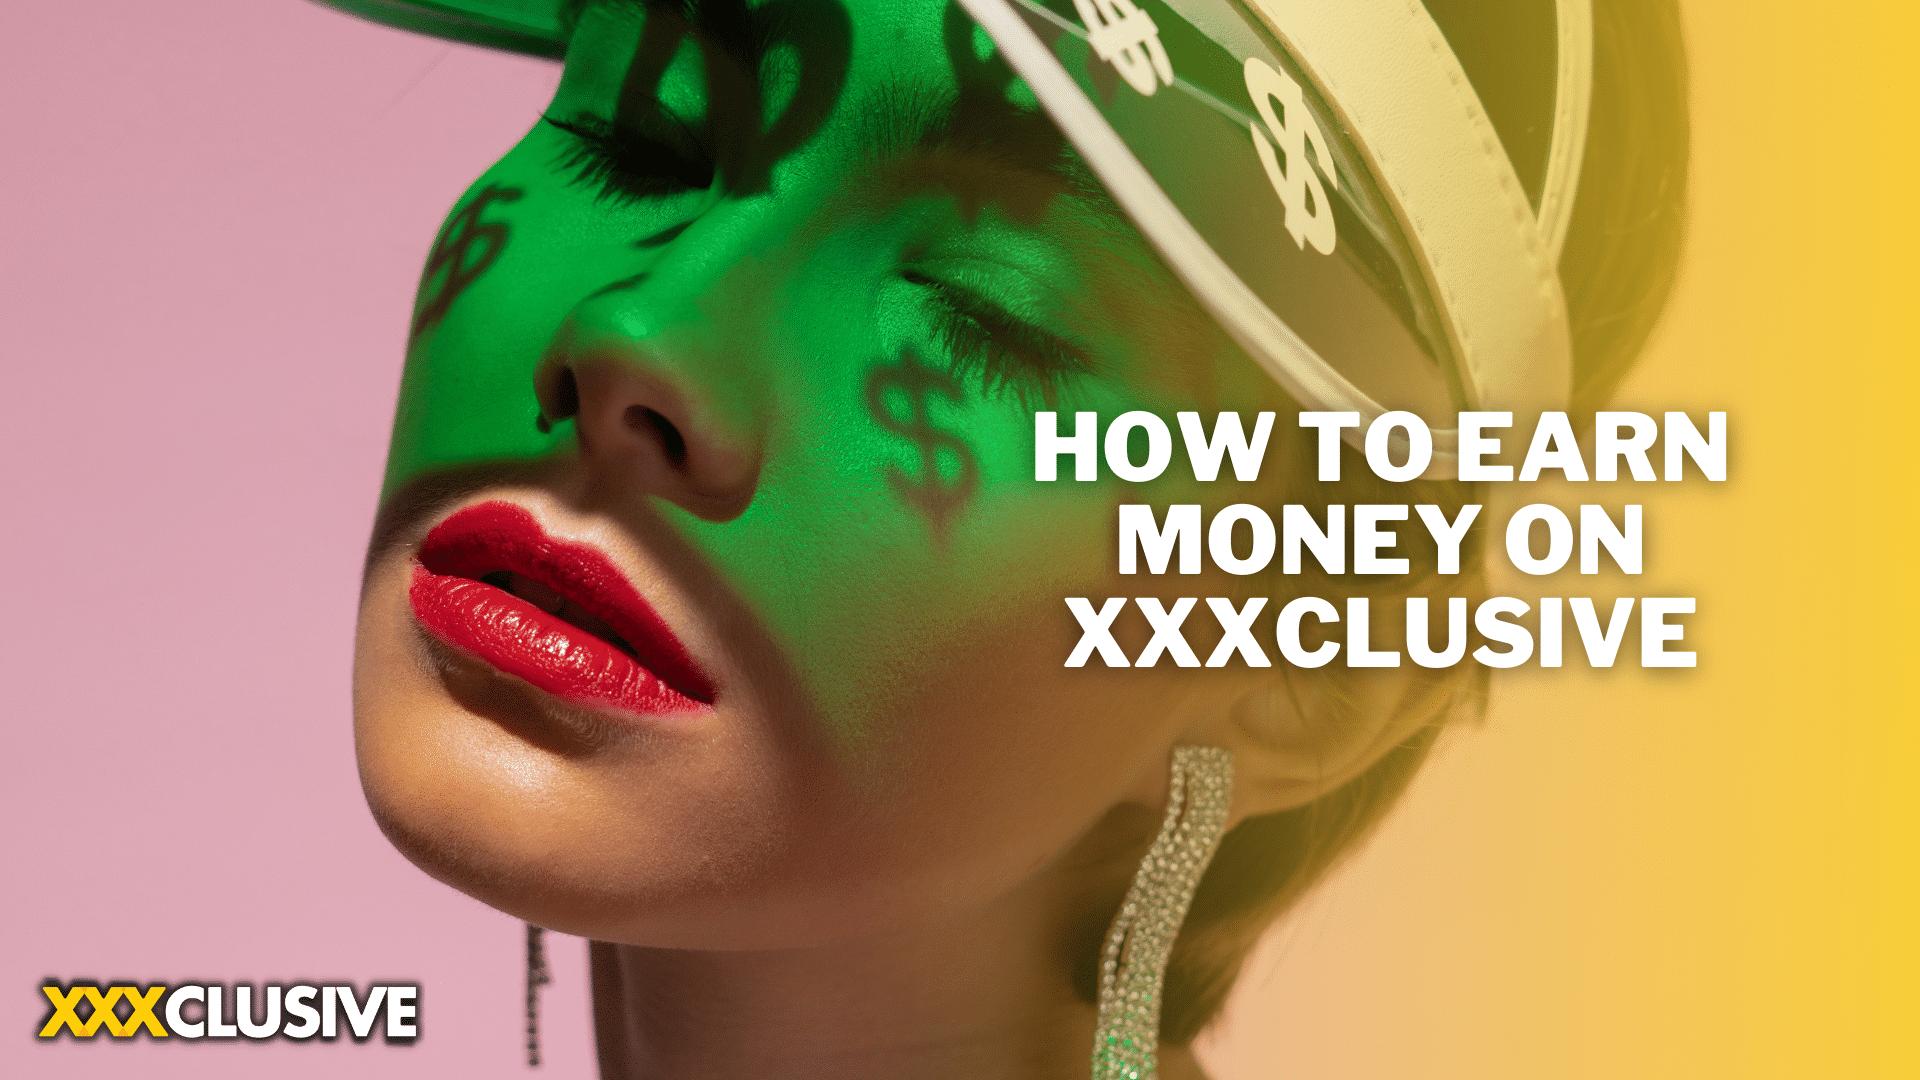 How to earn money on xxxclusive